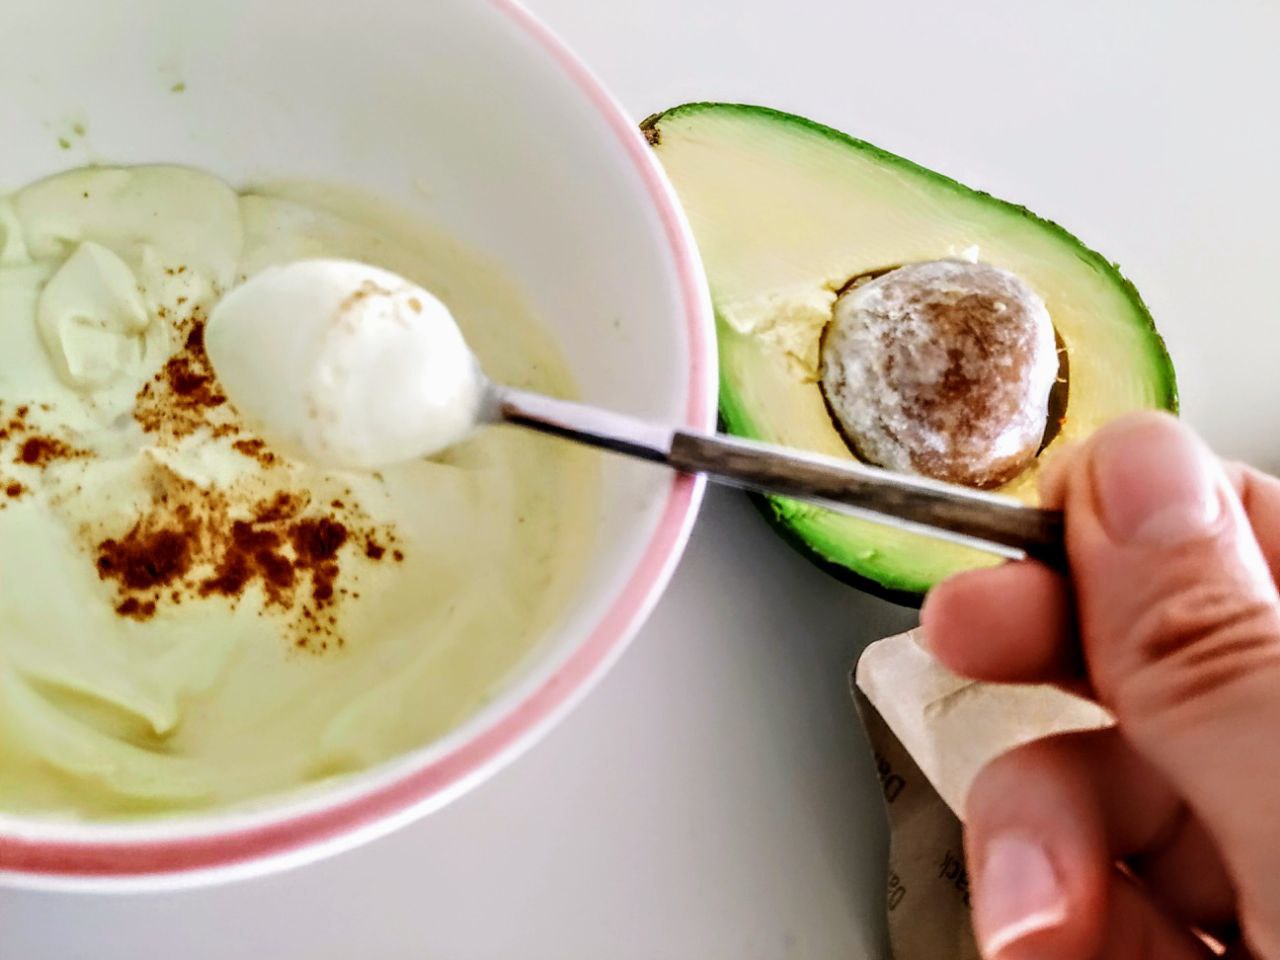 Colazione light sana e nutriente: yogurt greco con avocado maca in polvere e cannella